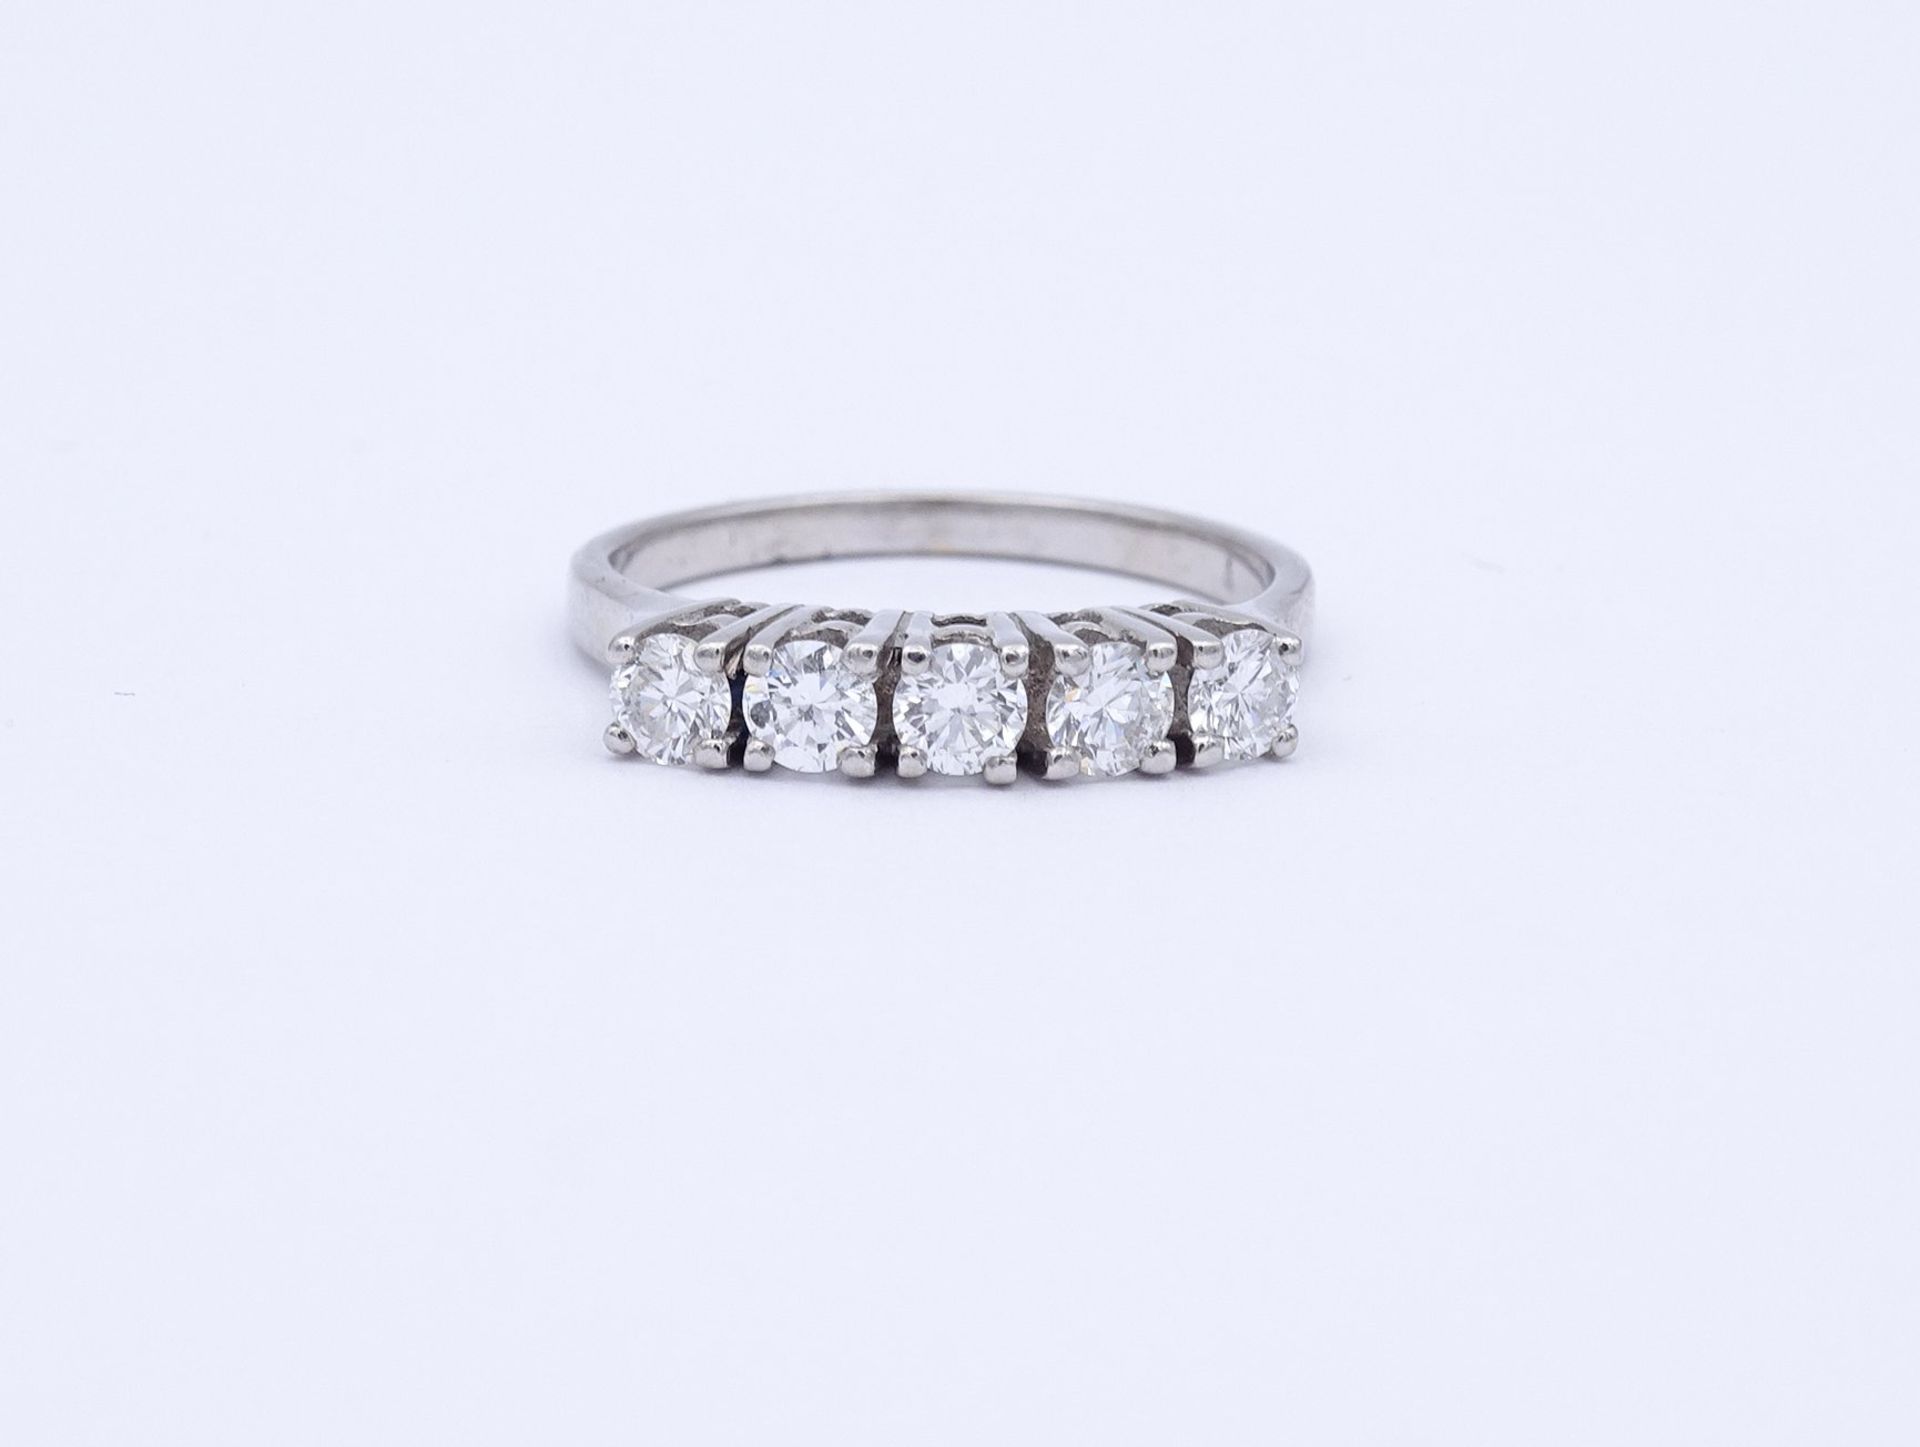 Prachtvoller Brillant Ring, WG 0.585, 5 Brillanten in guter Qualität zus. ca. 0,80ct., 3,3g., RG 55 - Bild 2 aus 7